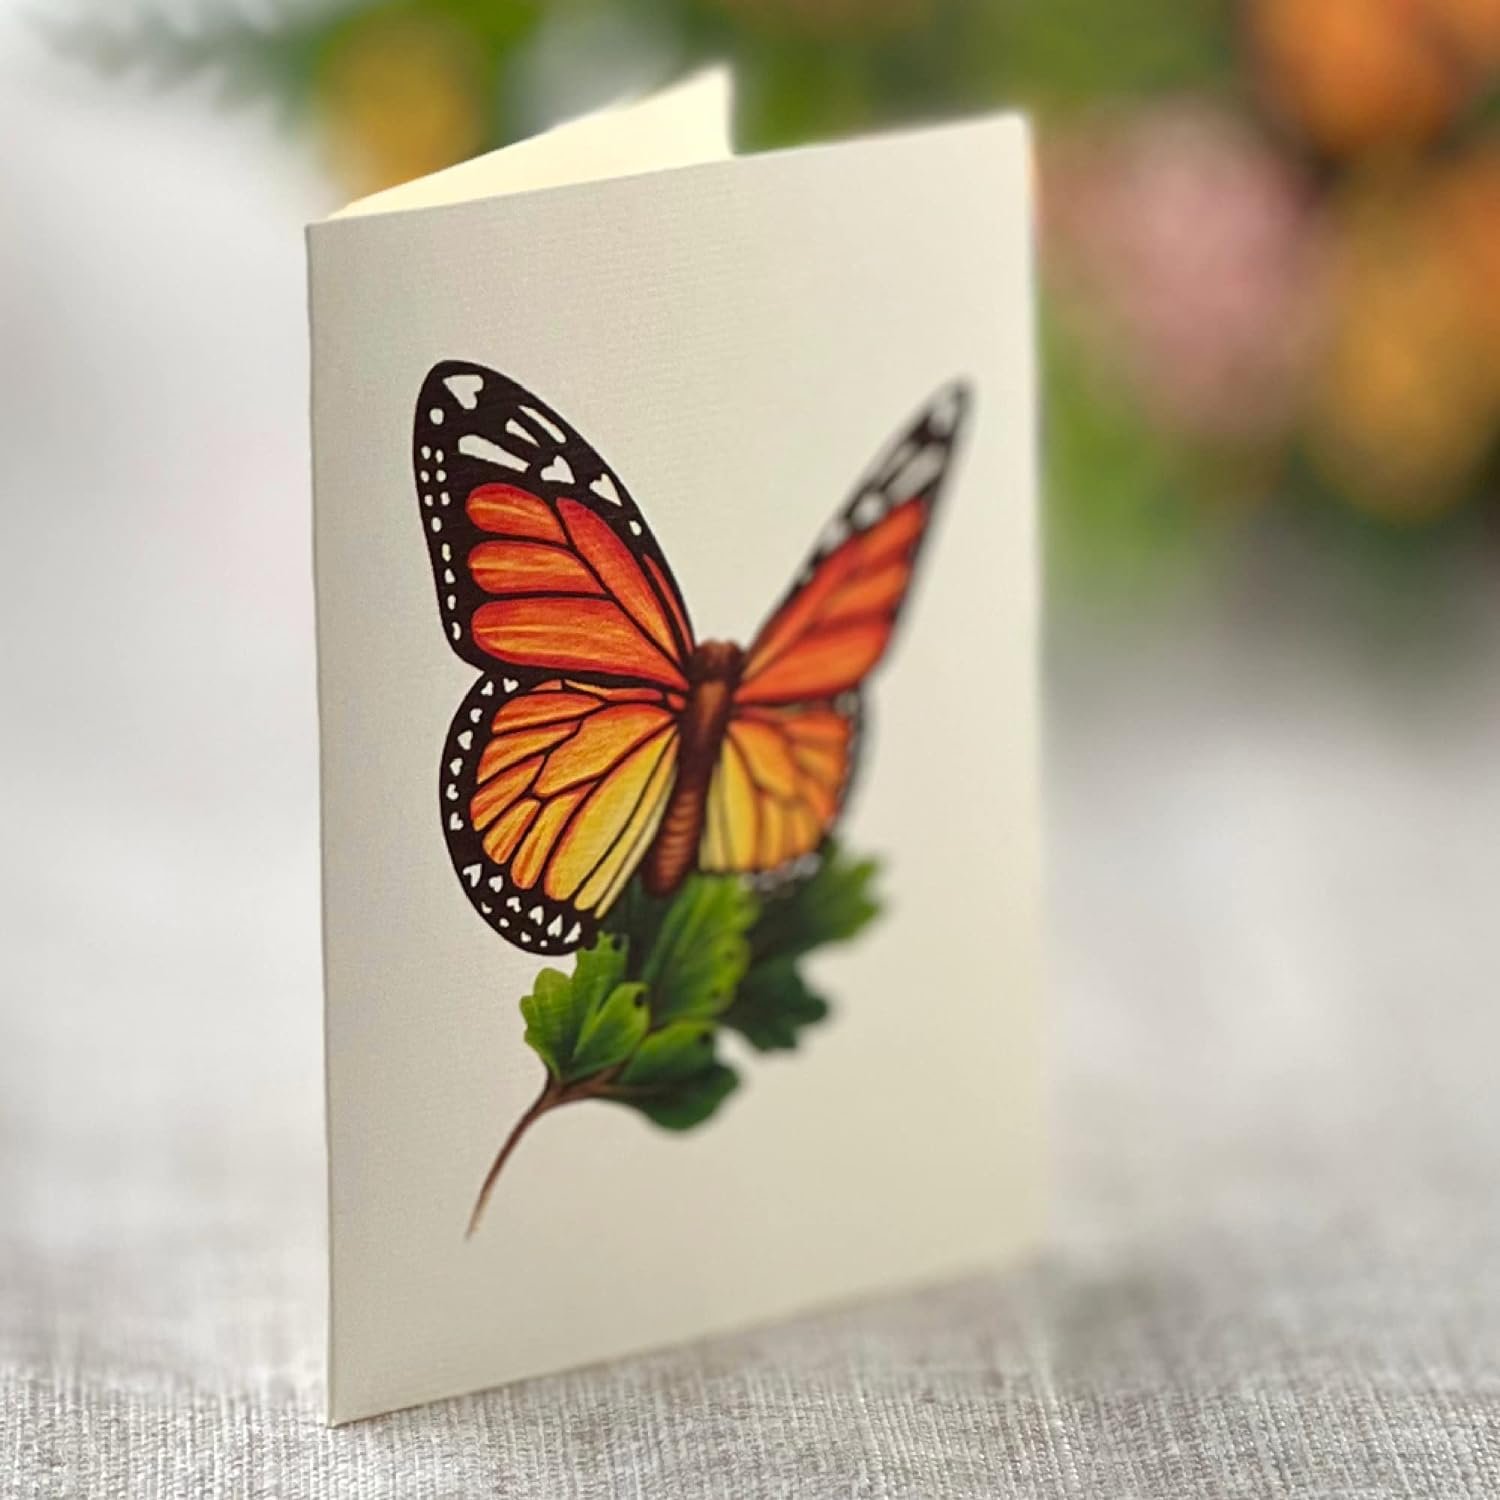 Butterflies & Buttercups Pop Up Cards Review